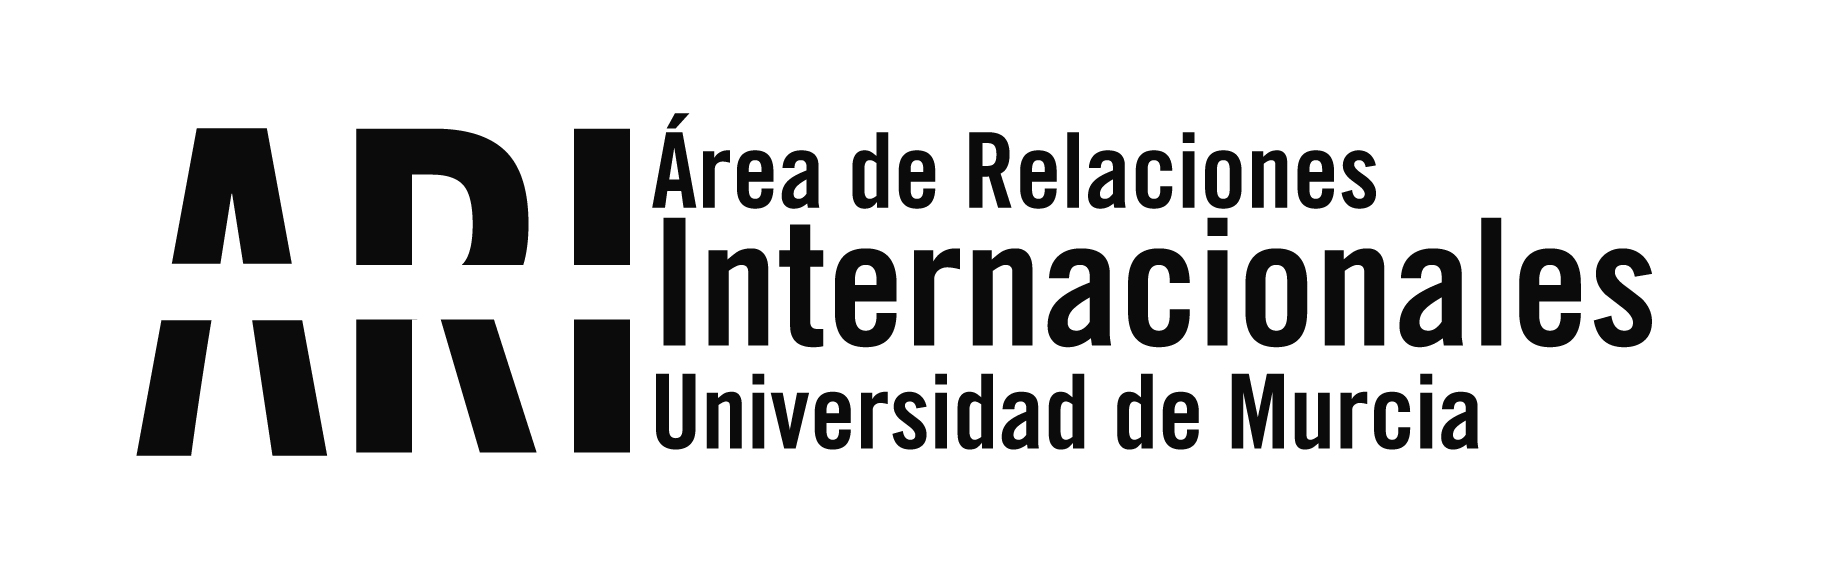 Próxima apertura del programa ILA de Intercambio con Latinoamérica y charlas informativas - Área de Relaciones Internacionales